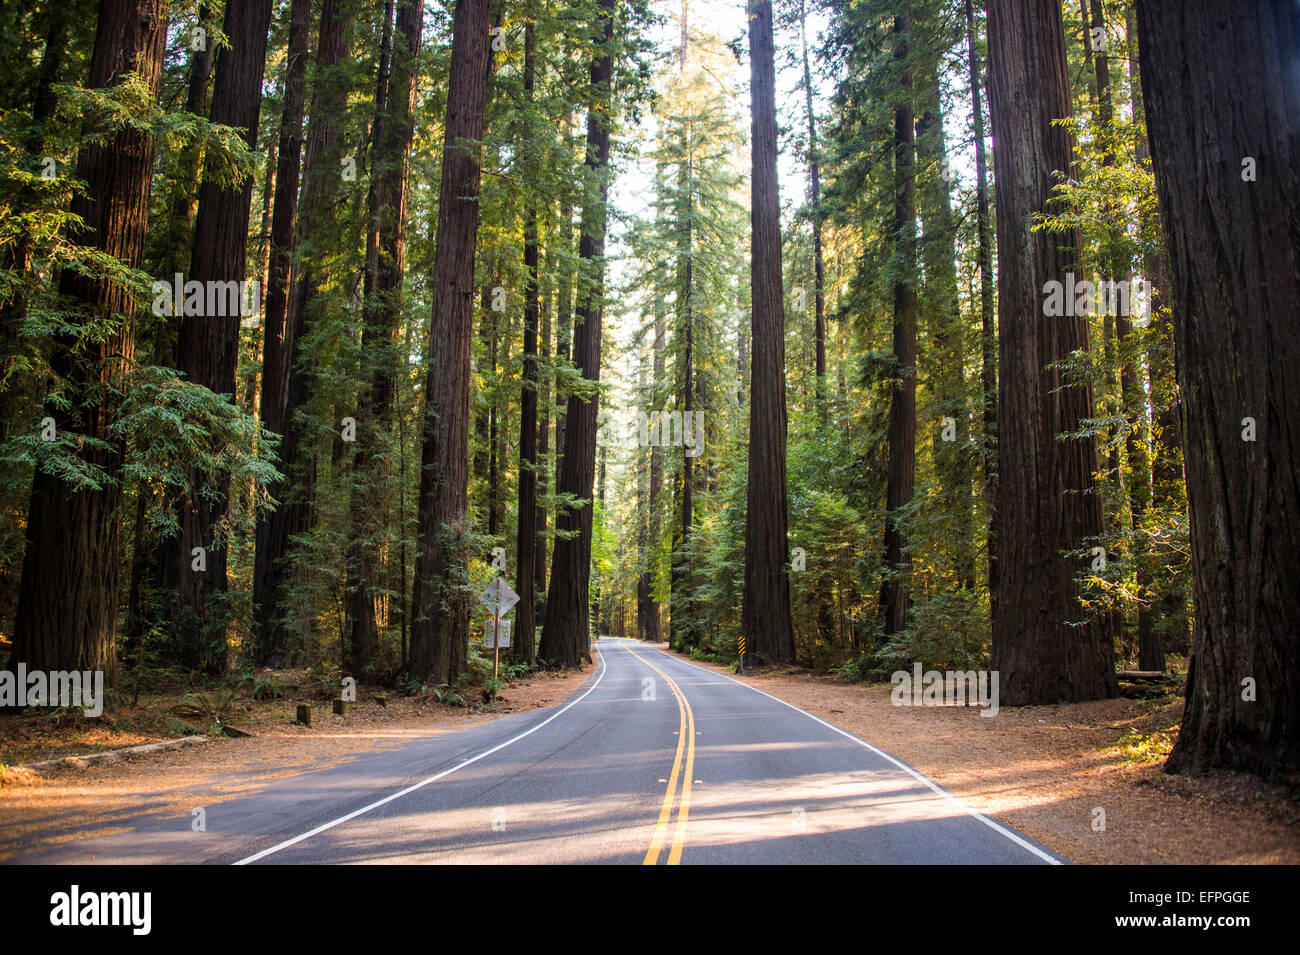 Route menant à travers l'Avenue of the Giants, séquoias géants, dans le Nord de la Californie, USA Banque D'Images